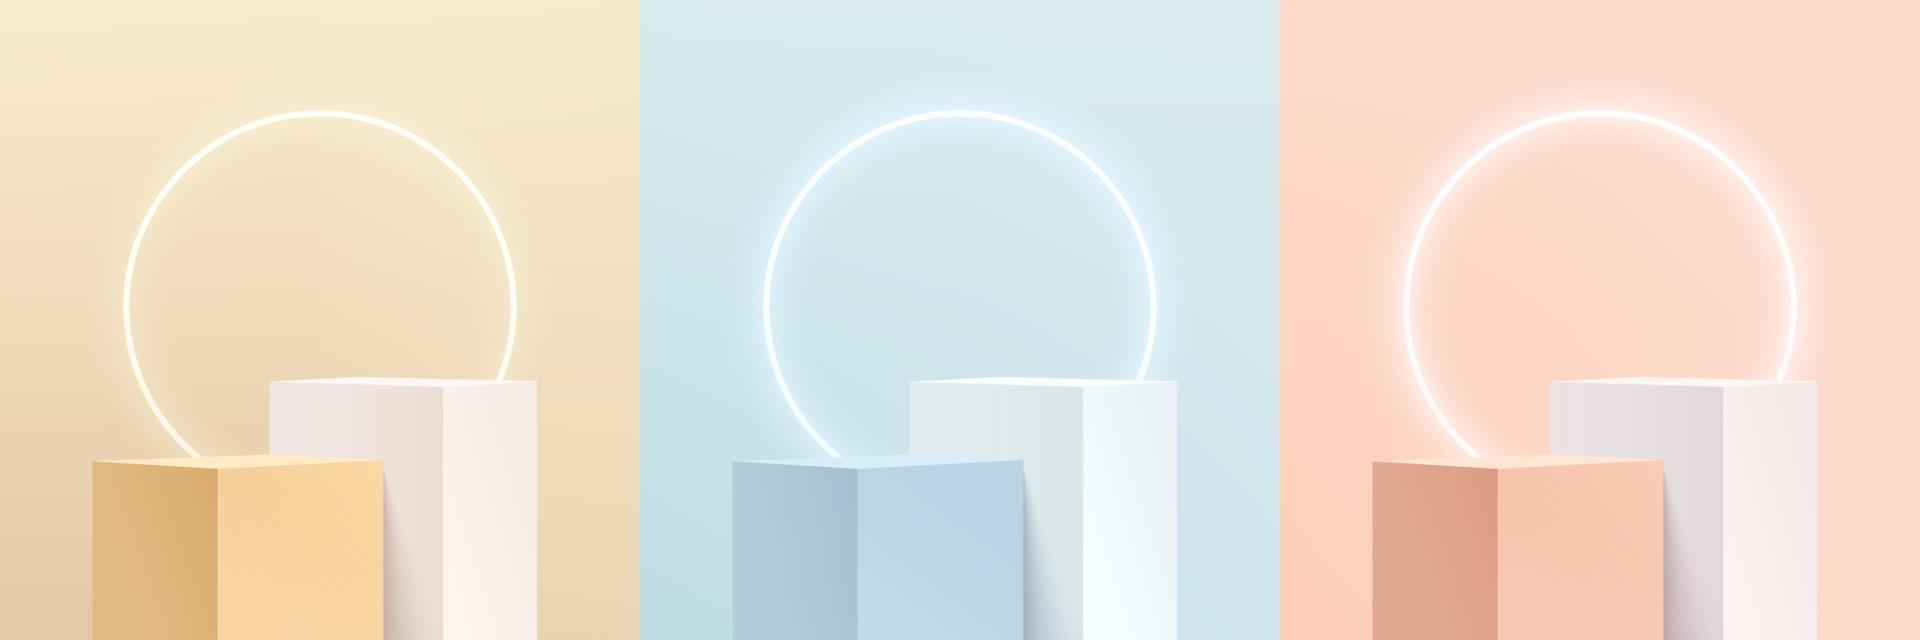 ensemble de piédestal de cube 3d abstrait rose, jaune, bleu et blanc ou podium de stand avec néon de cercle illuminé. collection de scènes minimales pastel. plate-forme de rendu vectoriel pour la présentation de l'affichage du produit.